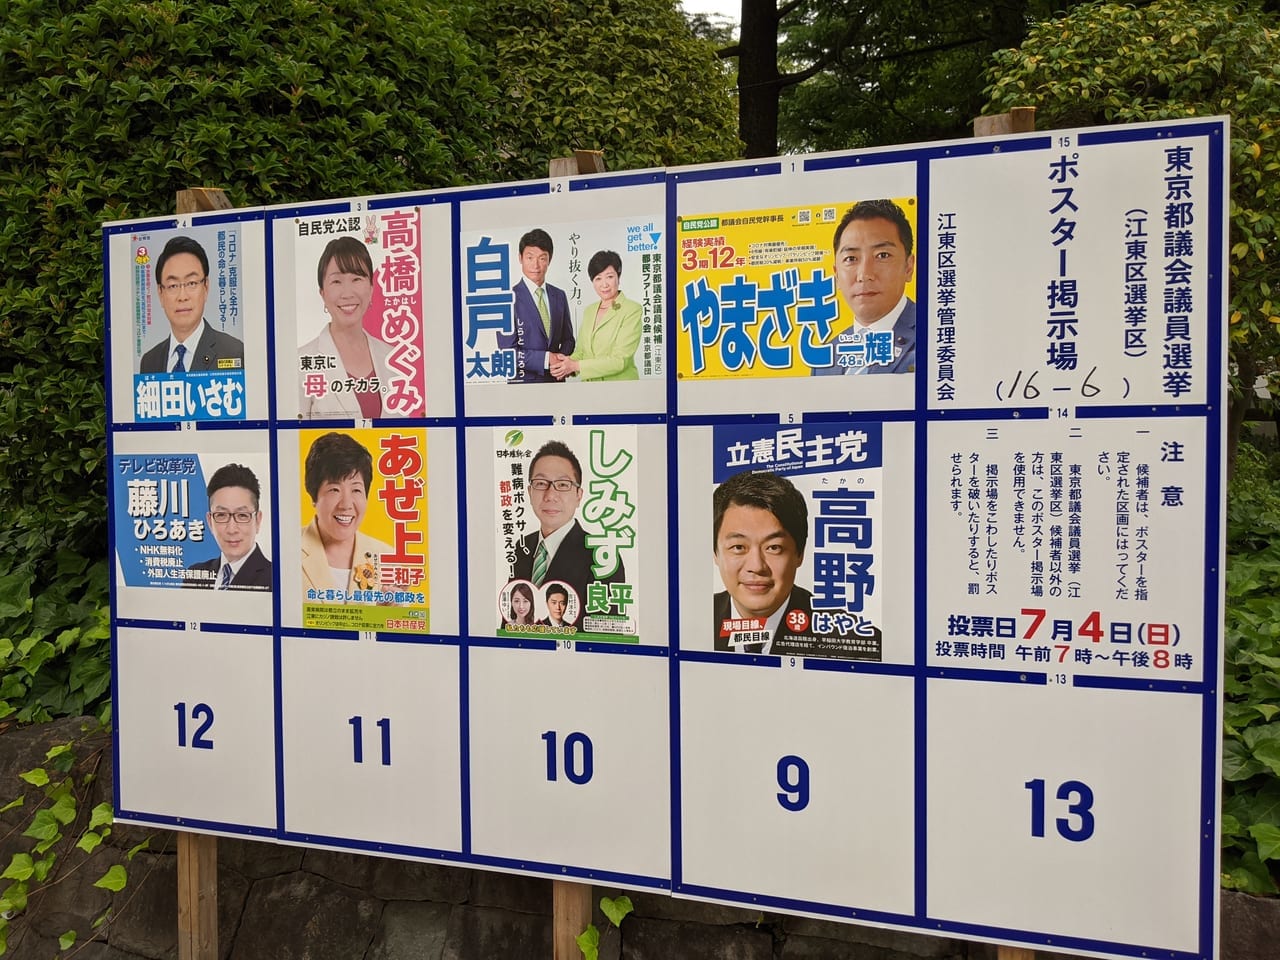 2021年の東京都議会議員選挙の候補者一覧（江東区ポスター掲示）